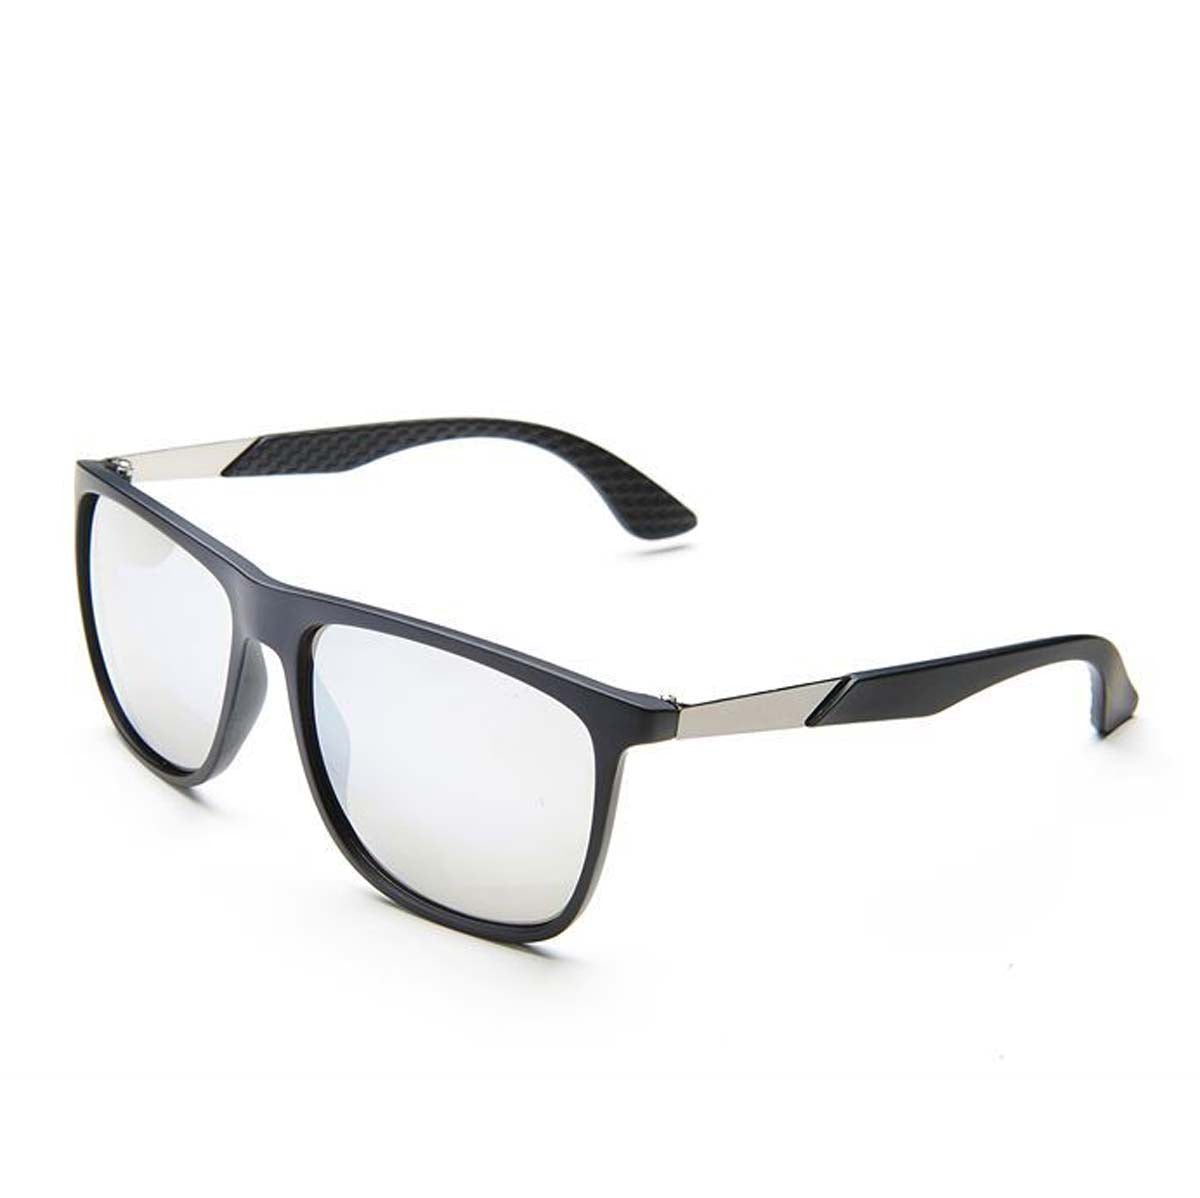 Ombre Black & Grey Sunglasses